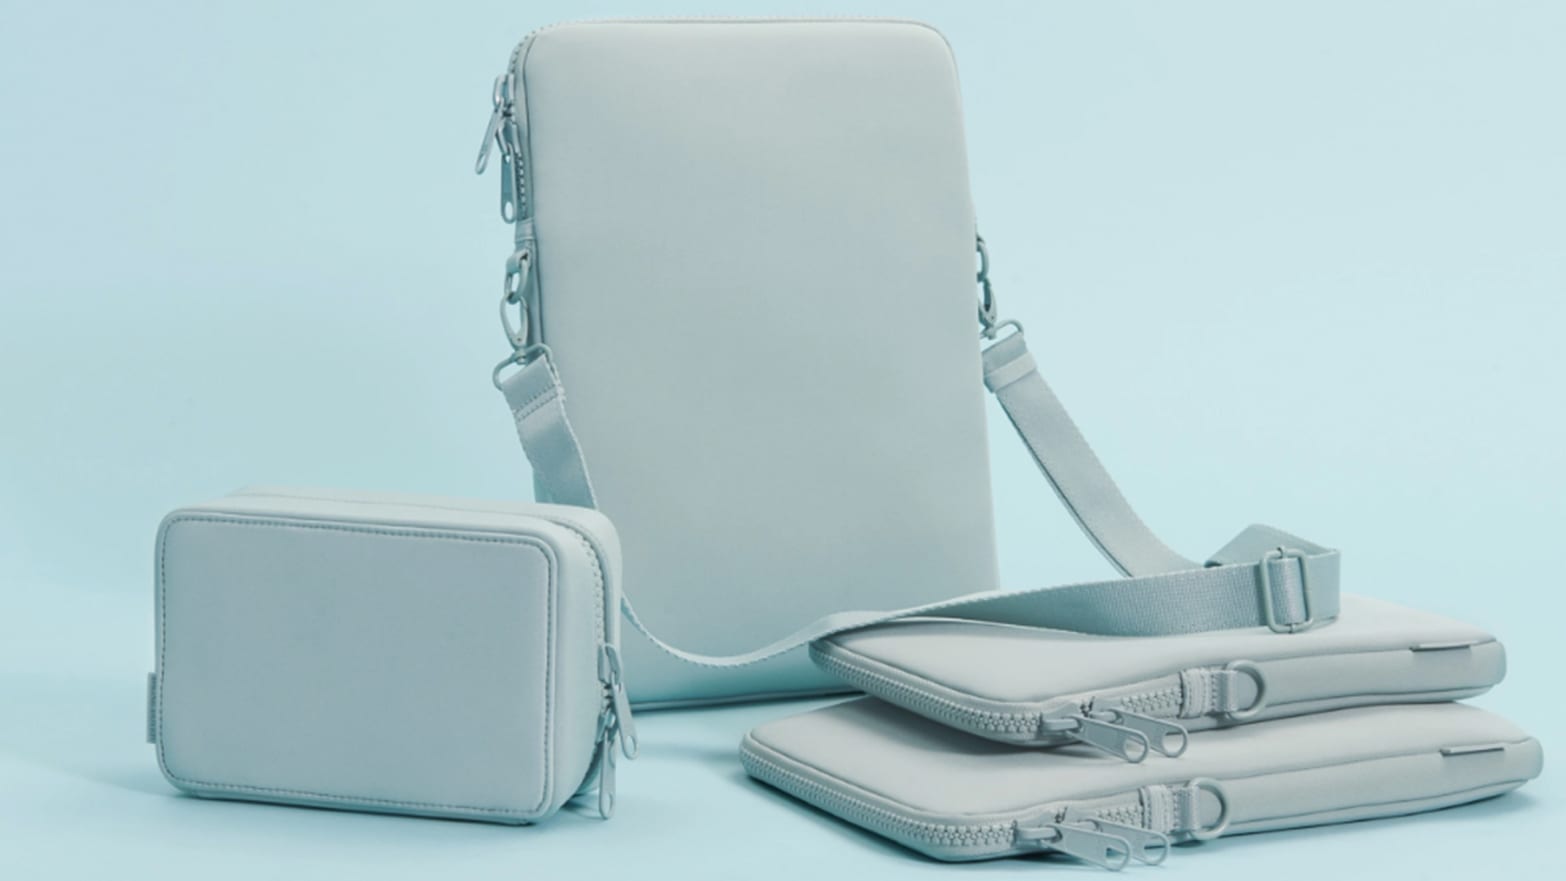 Dagne Dover Laptop Sleeve Crossbody Bags for Women